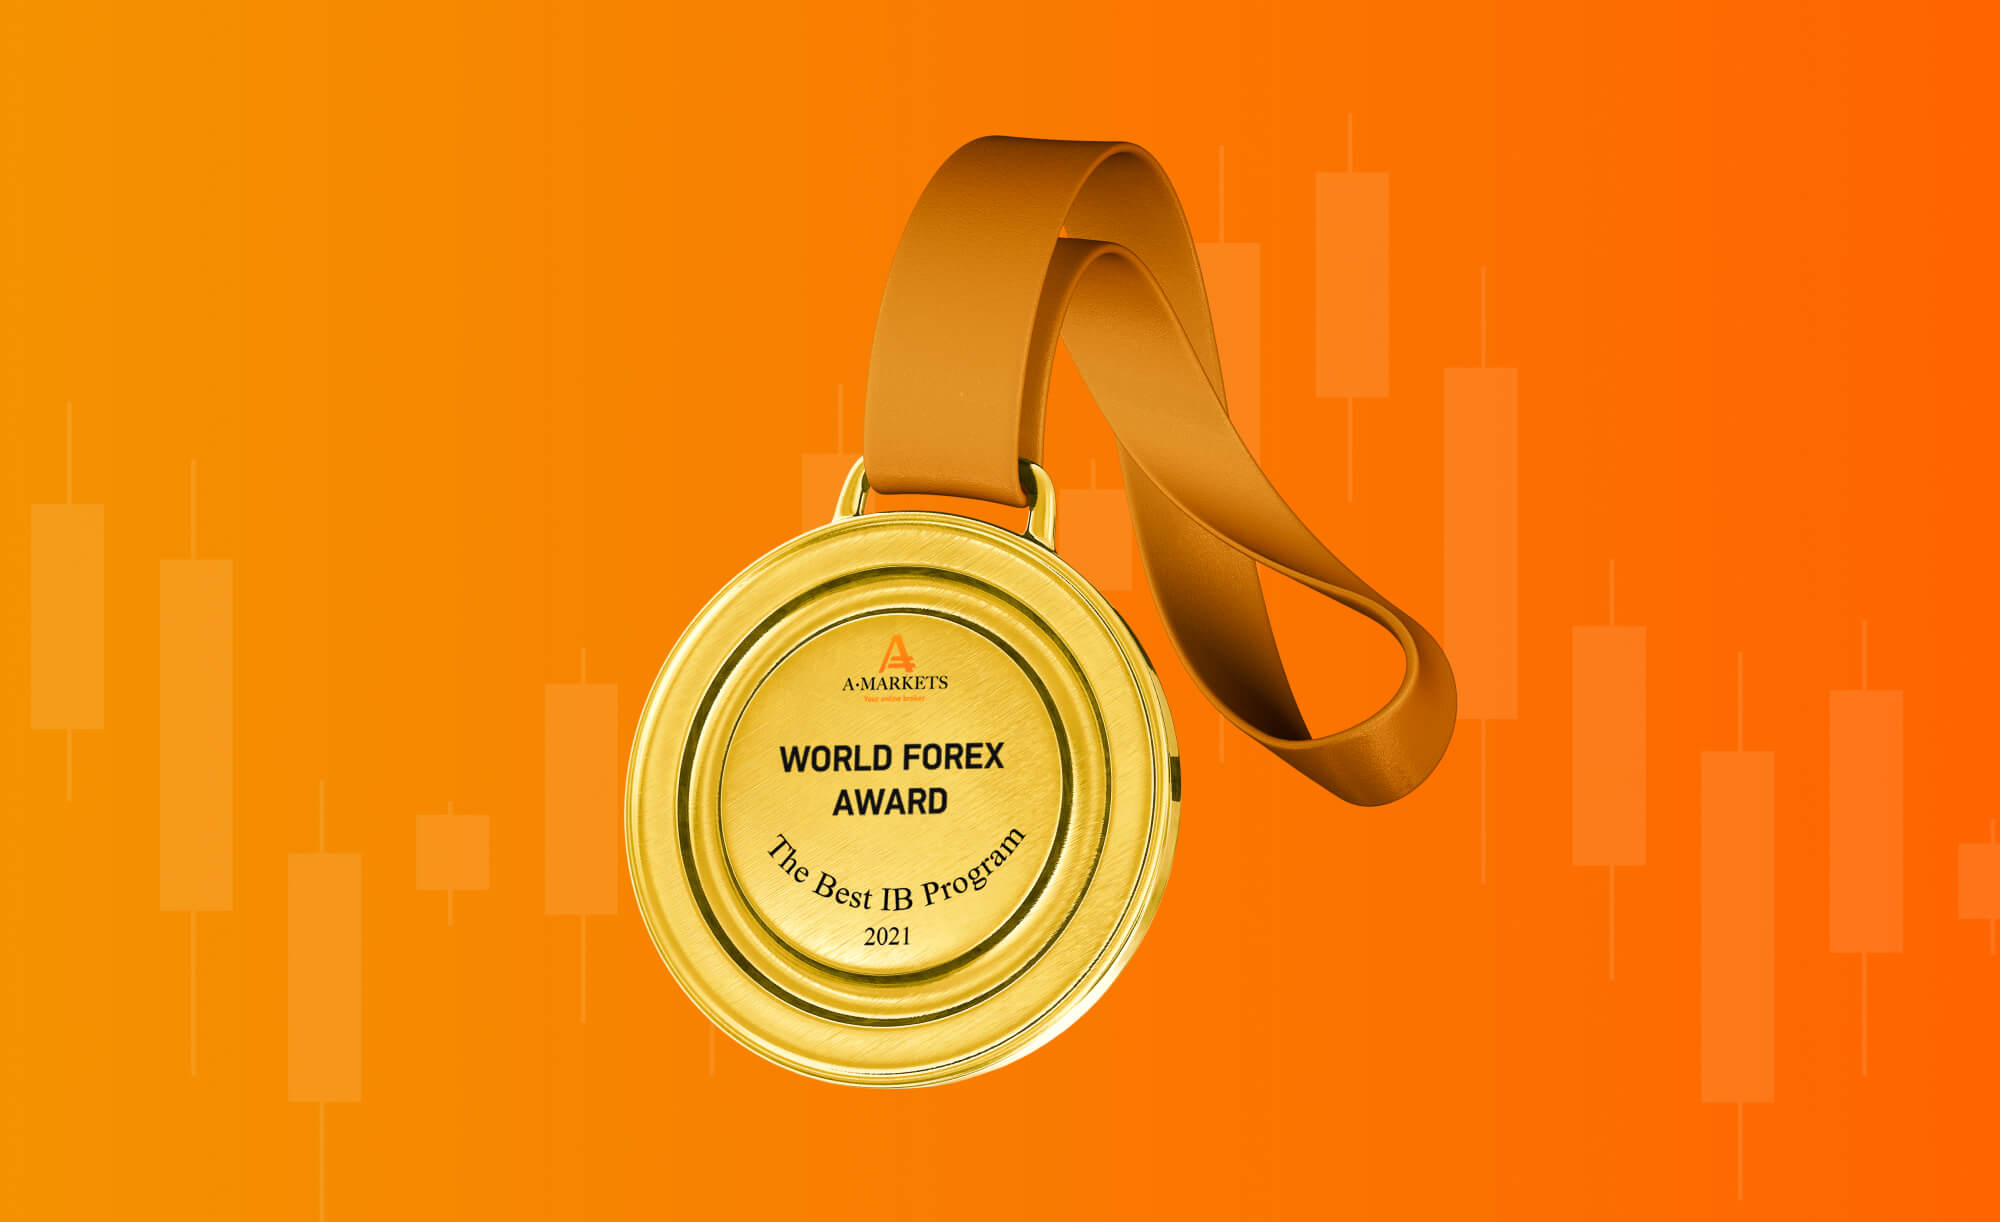 آمارکتس جایزه World Forex را به دست آورد: بهترین برنامه ...